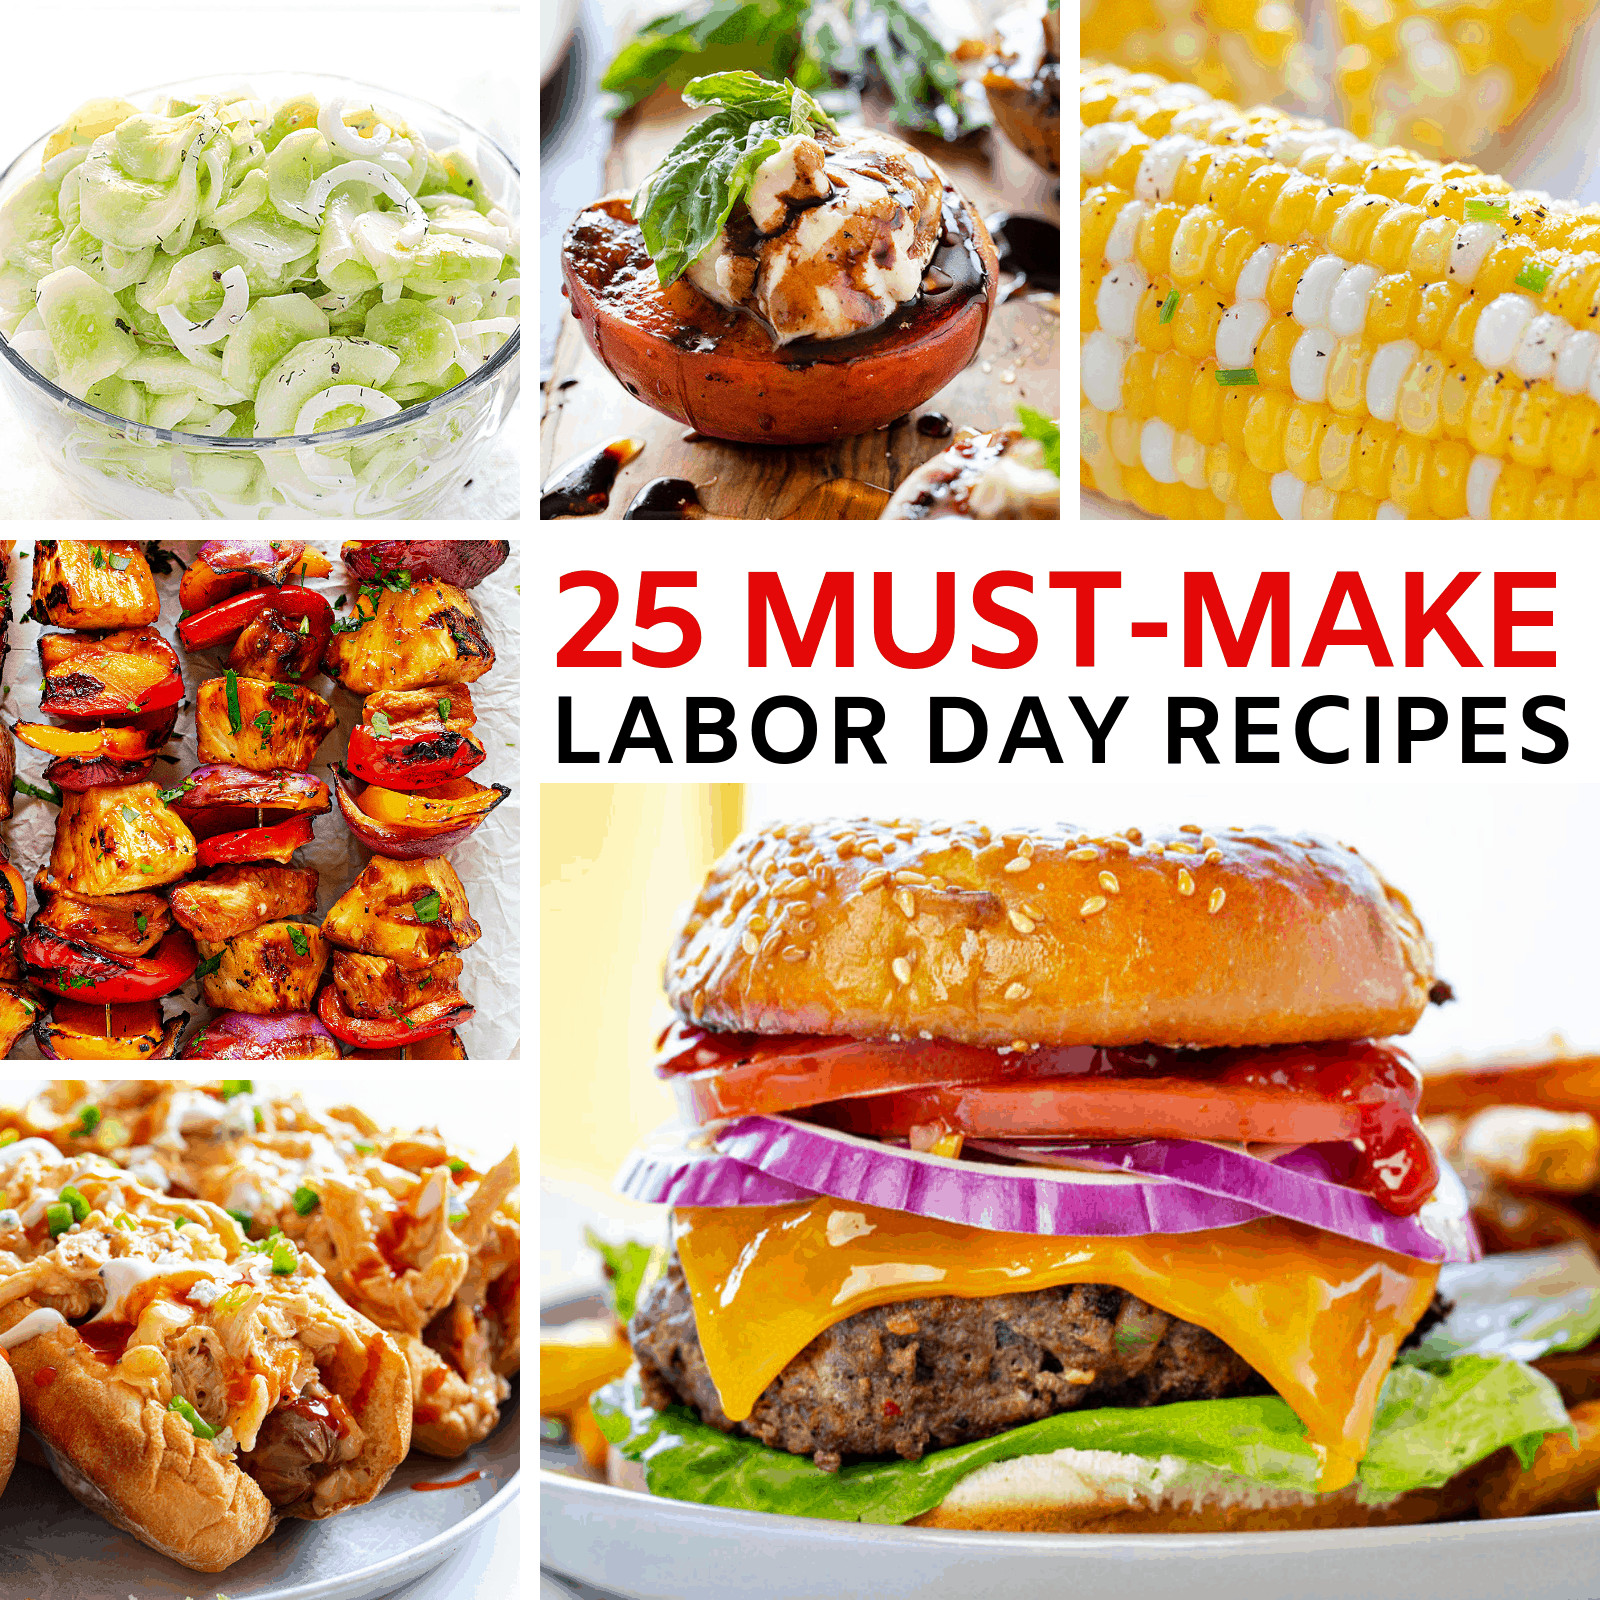 Labor Day Food Ideas
 25 Best Labor Day Food Ideas for 2019